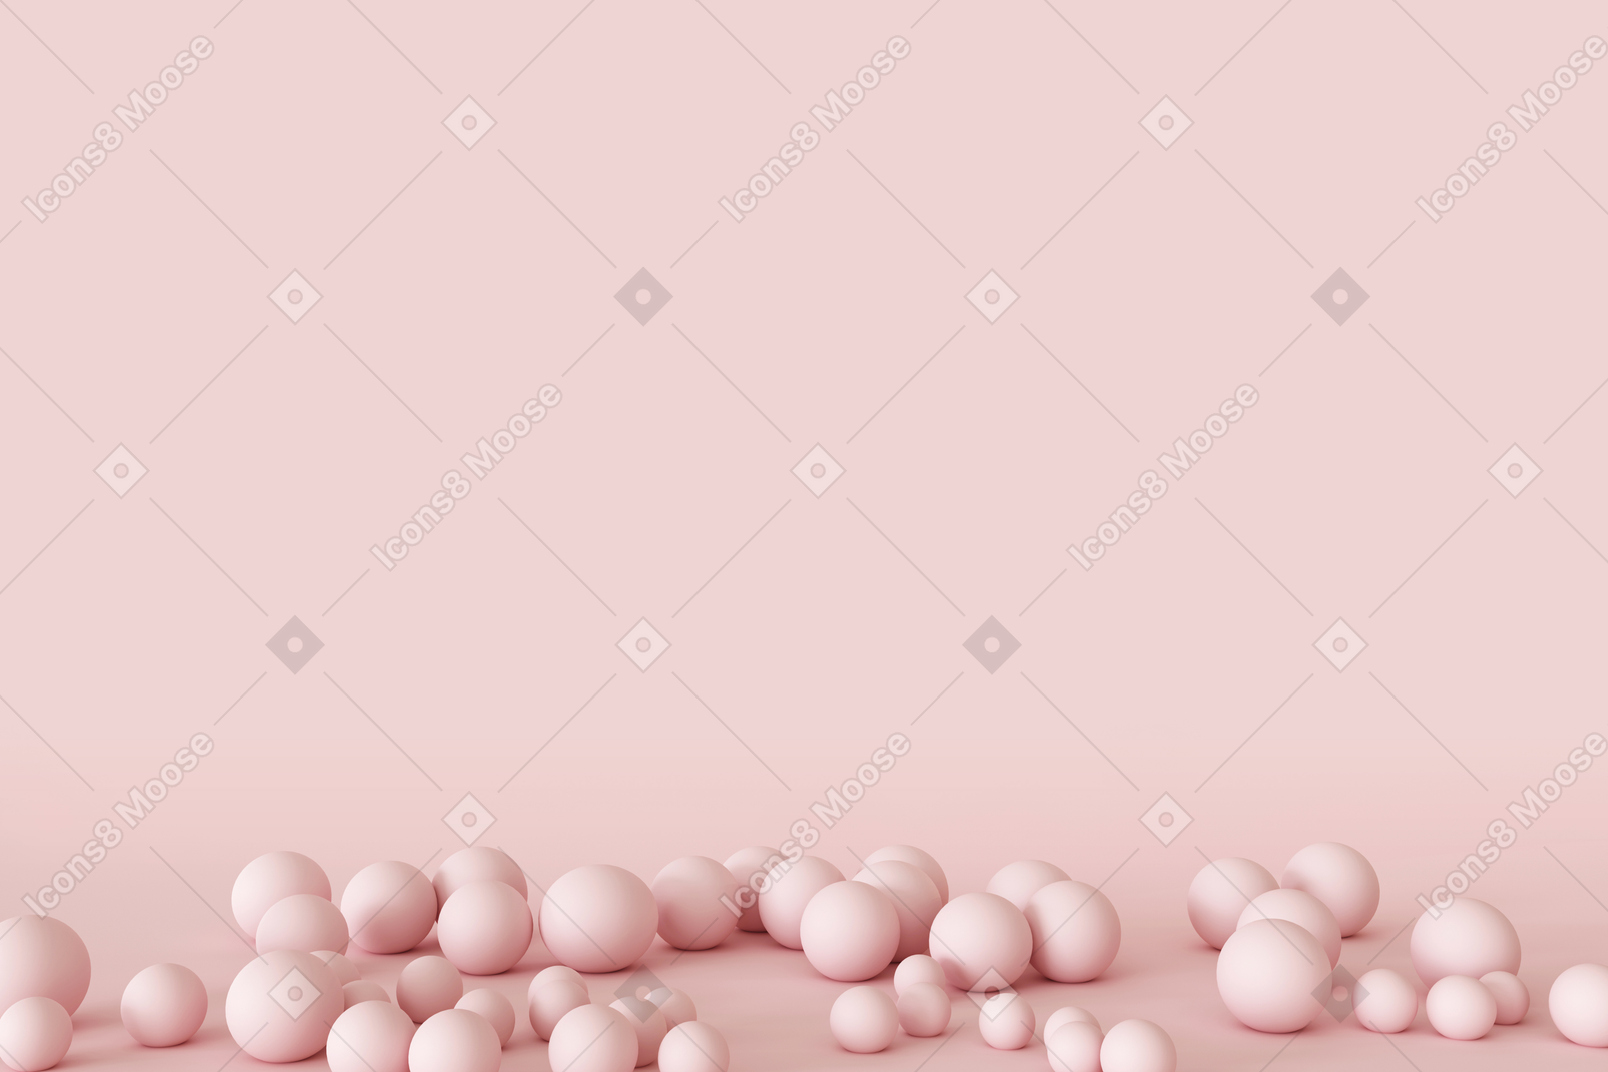 Fond rose avec de petites boules